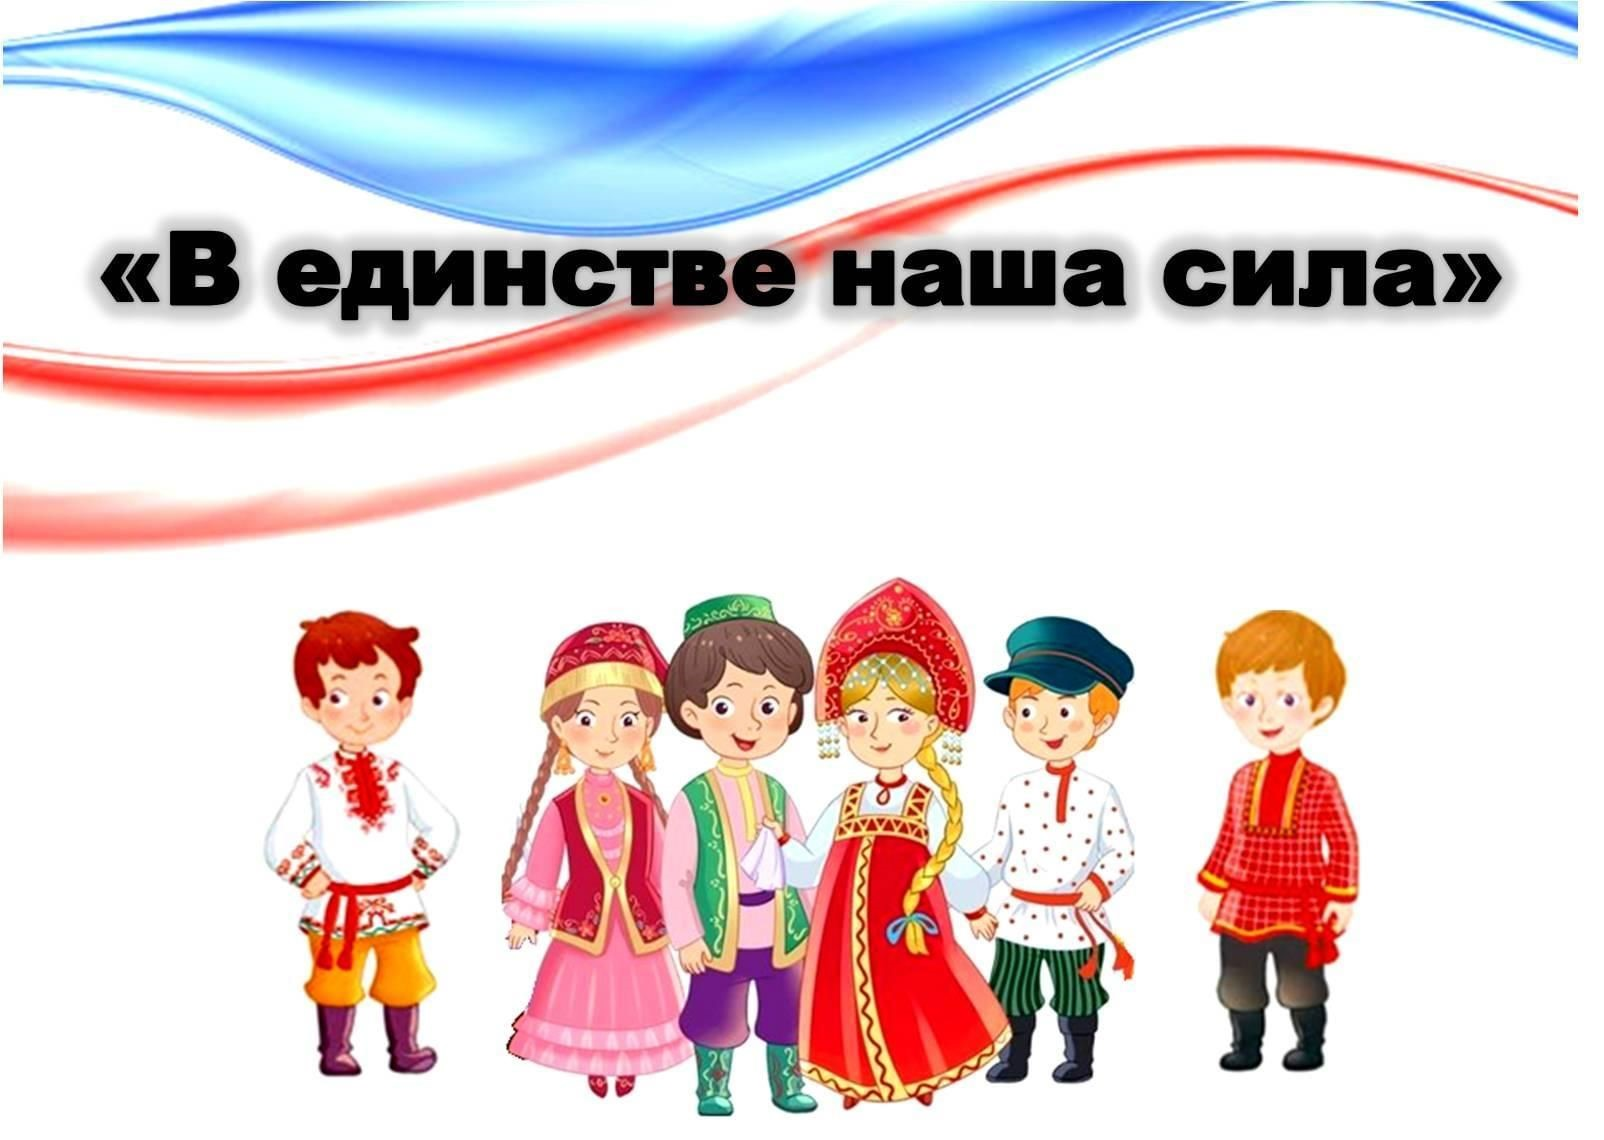 Назовите 3 единства. В единстве наша сила. Плакат в единстве наша сила. Единство народов России. В единстве наша сила рисунки.